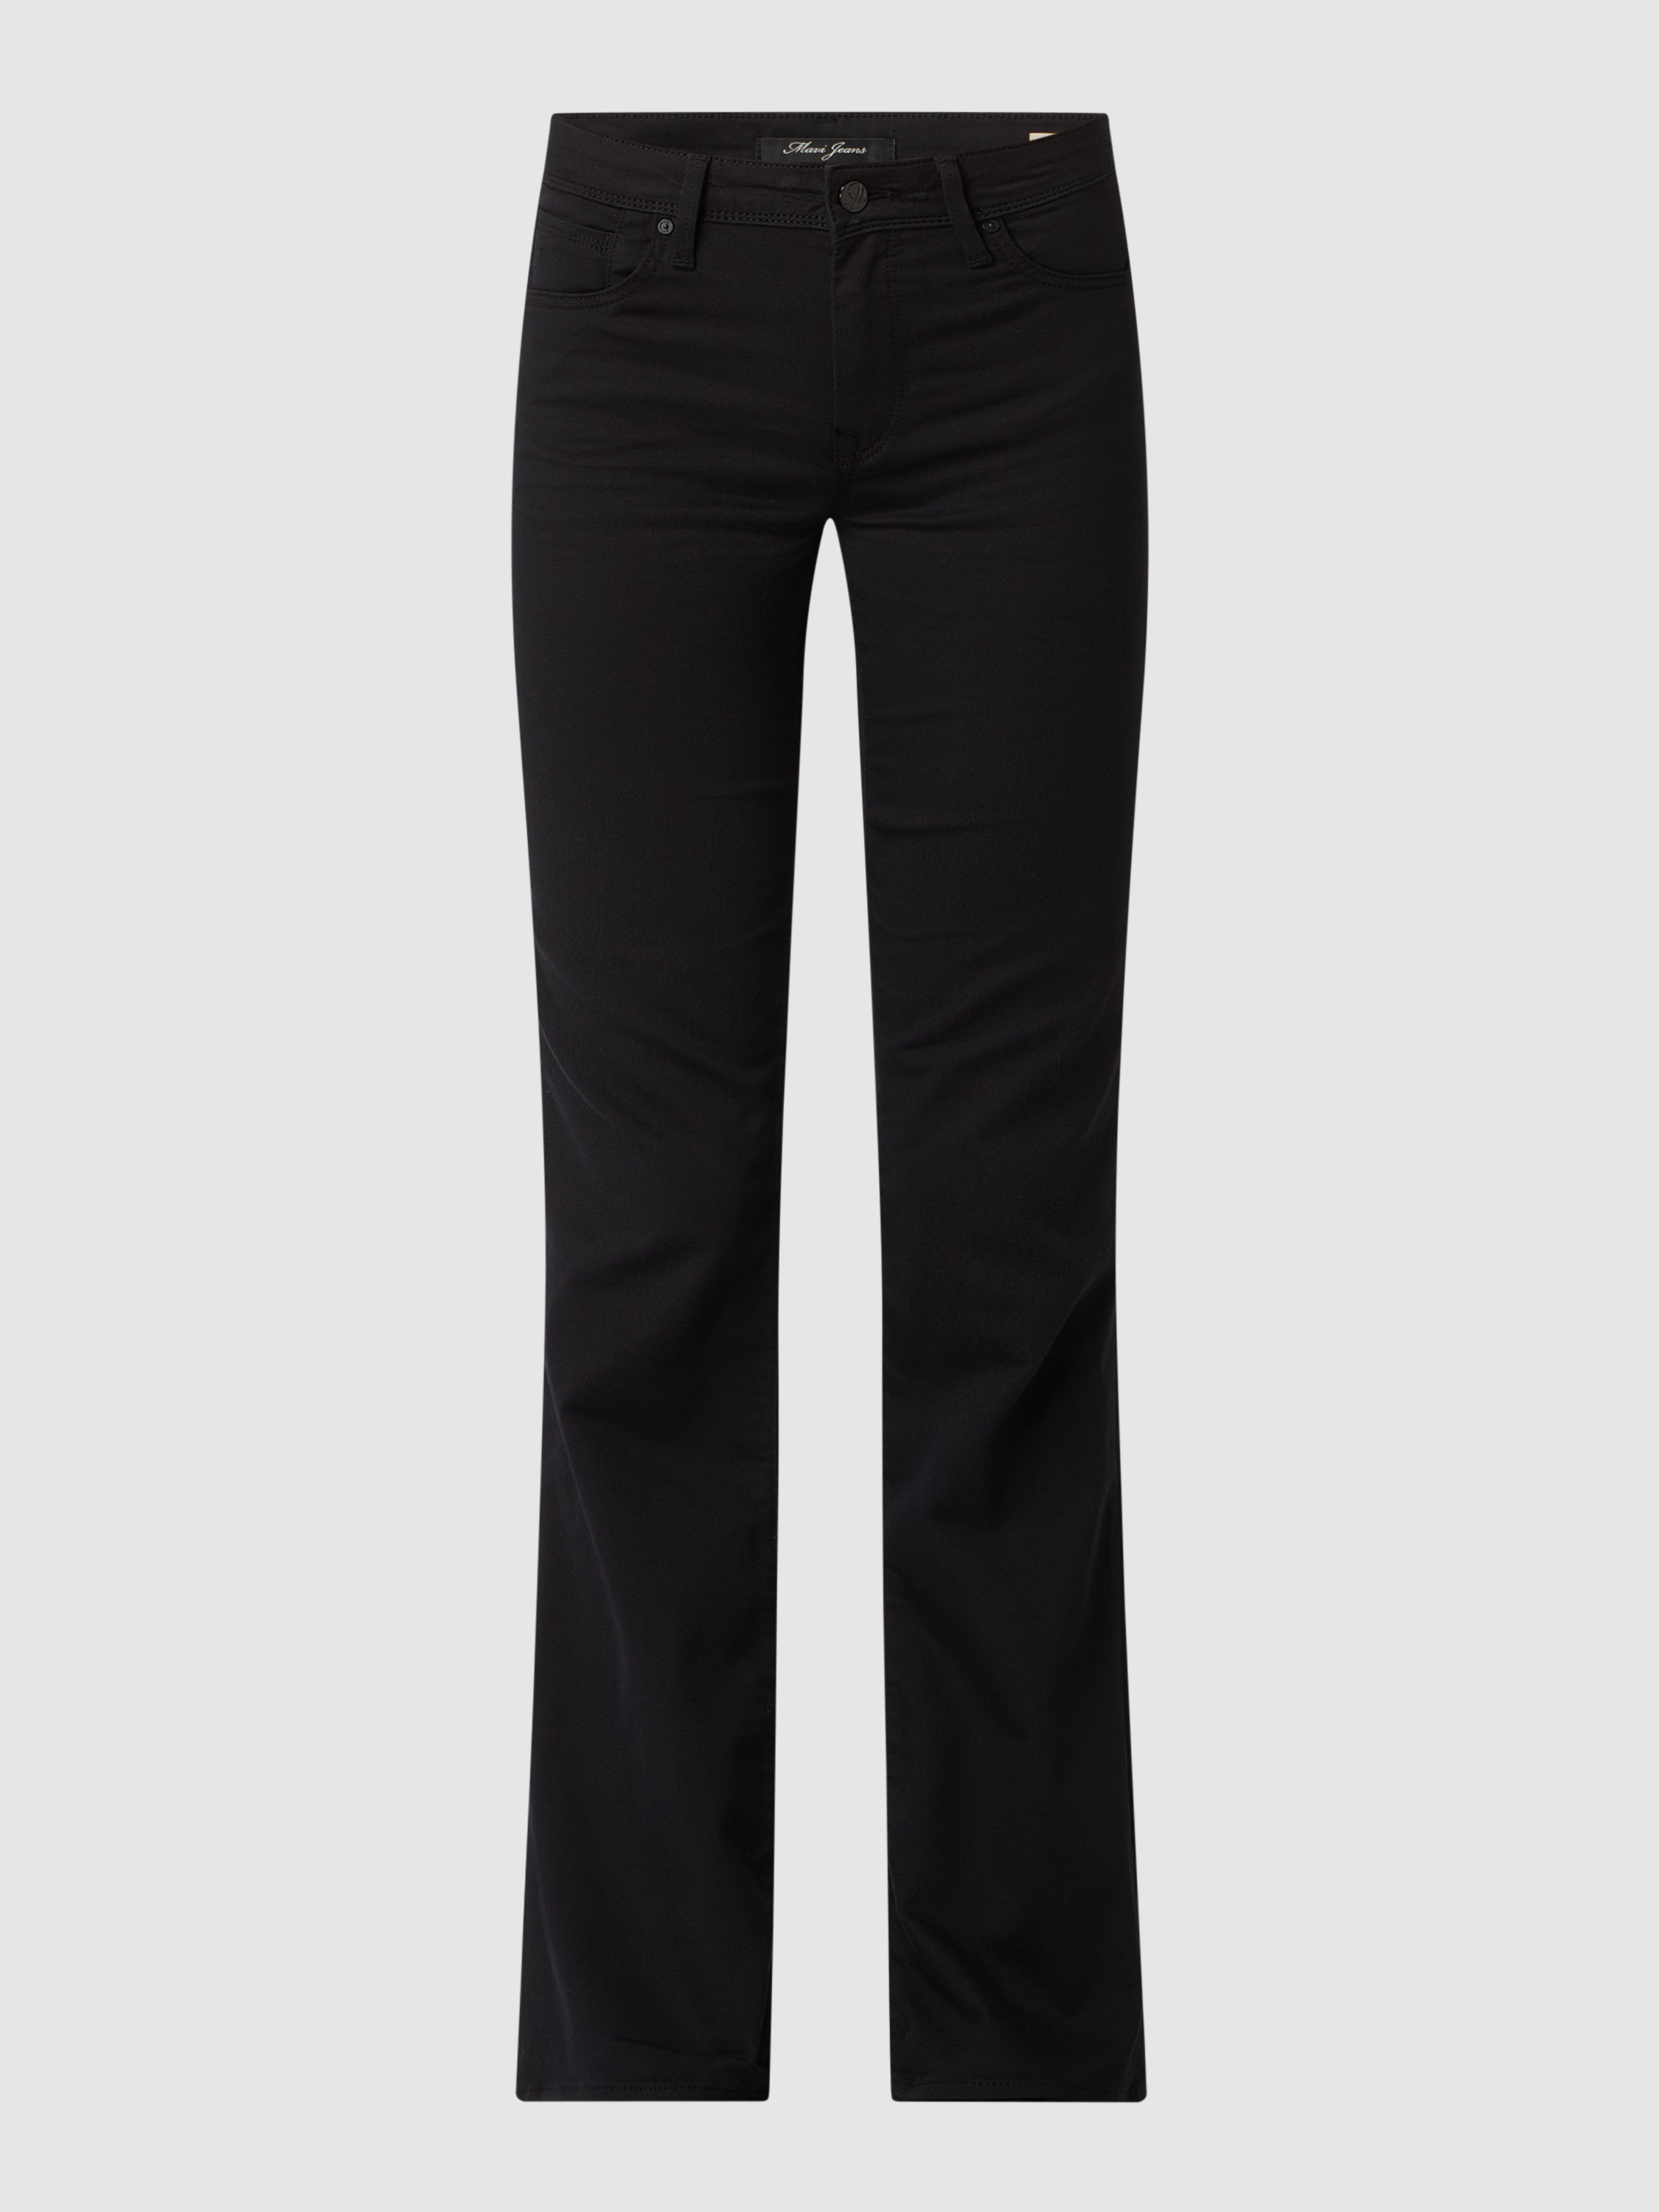 Джинсы женские mavi jeans 1455296 черные 26/32 (доставка из-за рубежа)